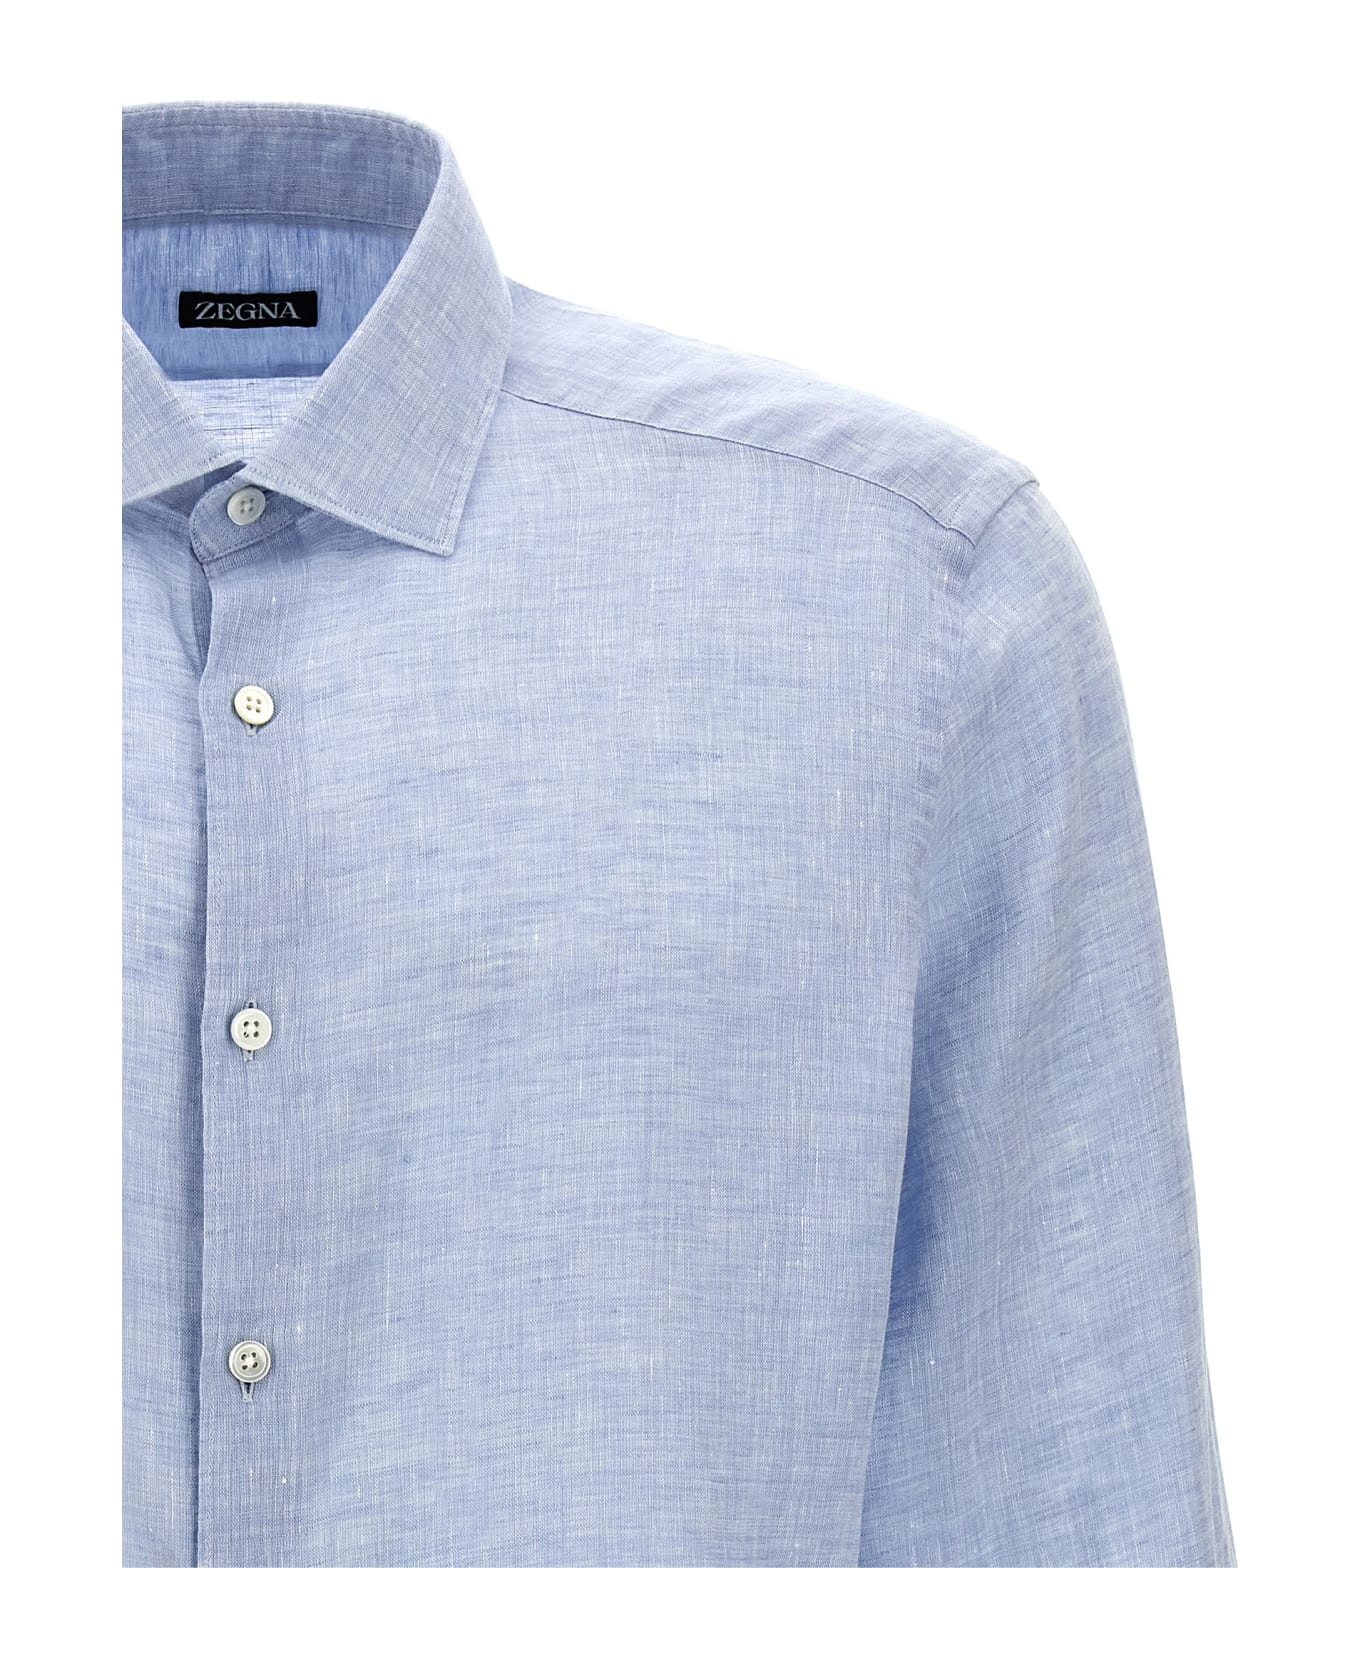 Zegna Linen Shirt - Light Blue